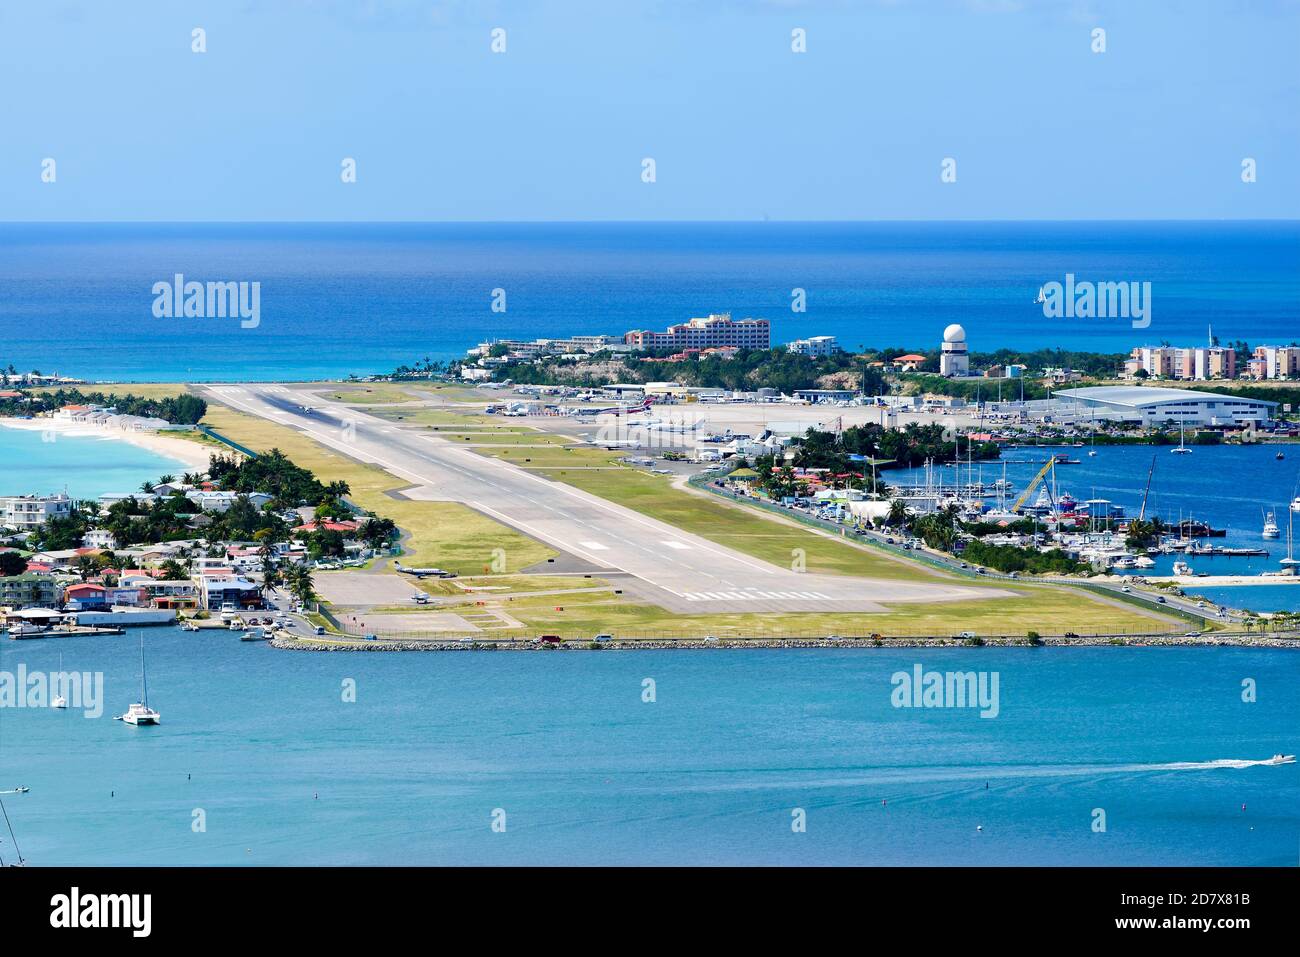 L'aéroport de Saint-Martin, également connu sous le nom de l'aéroport international Princess Juliana (PJIA). Piste de l'aéroport de Saint Martin / Sint Maarten (SXM / TNCM). Banque D'Images